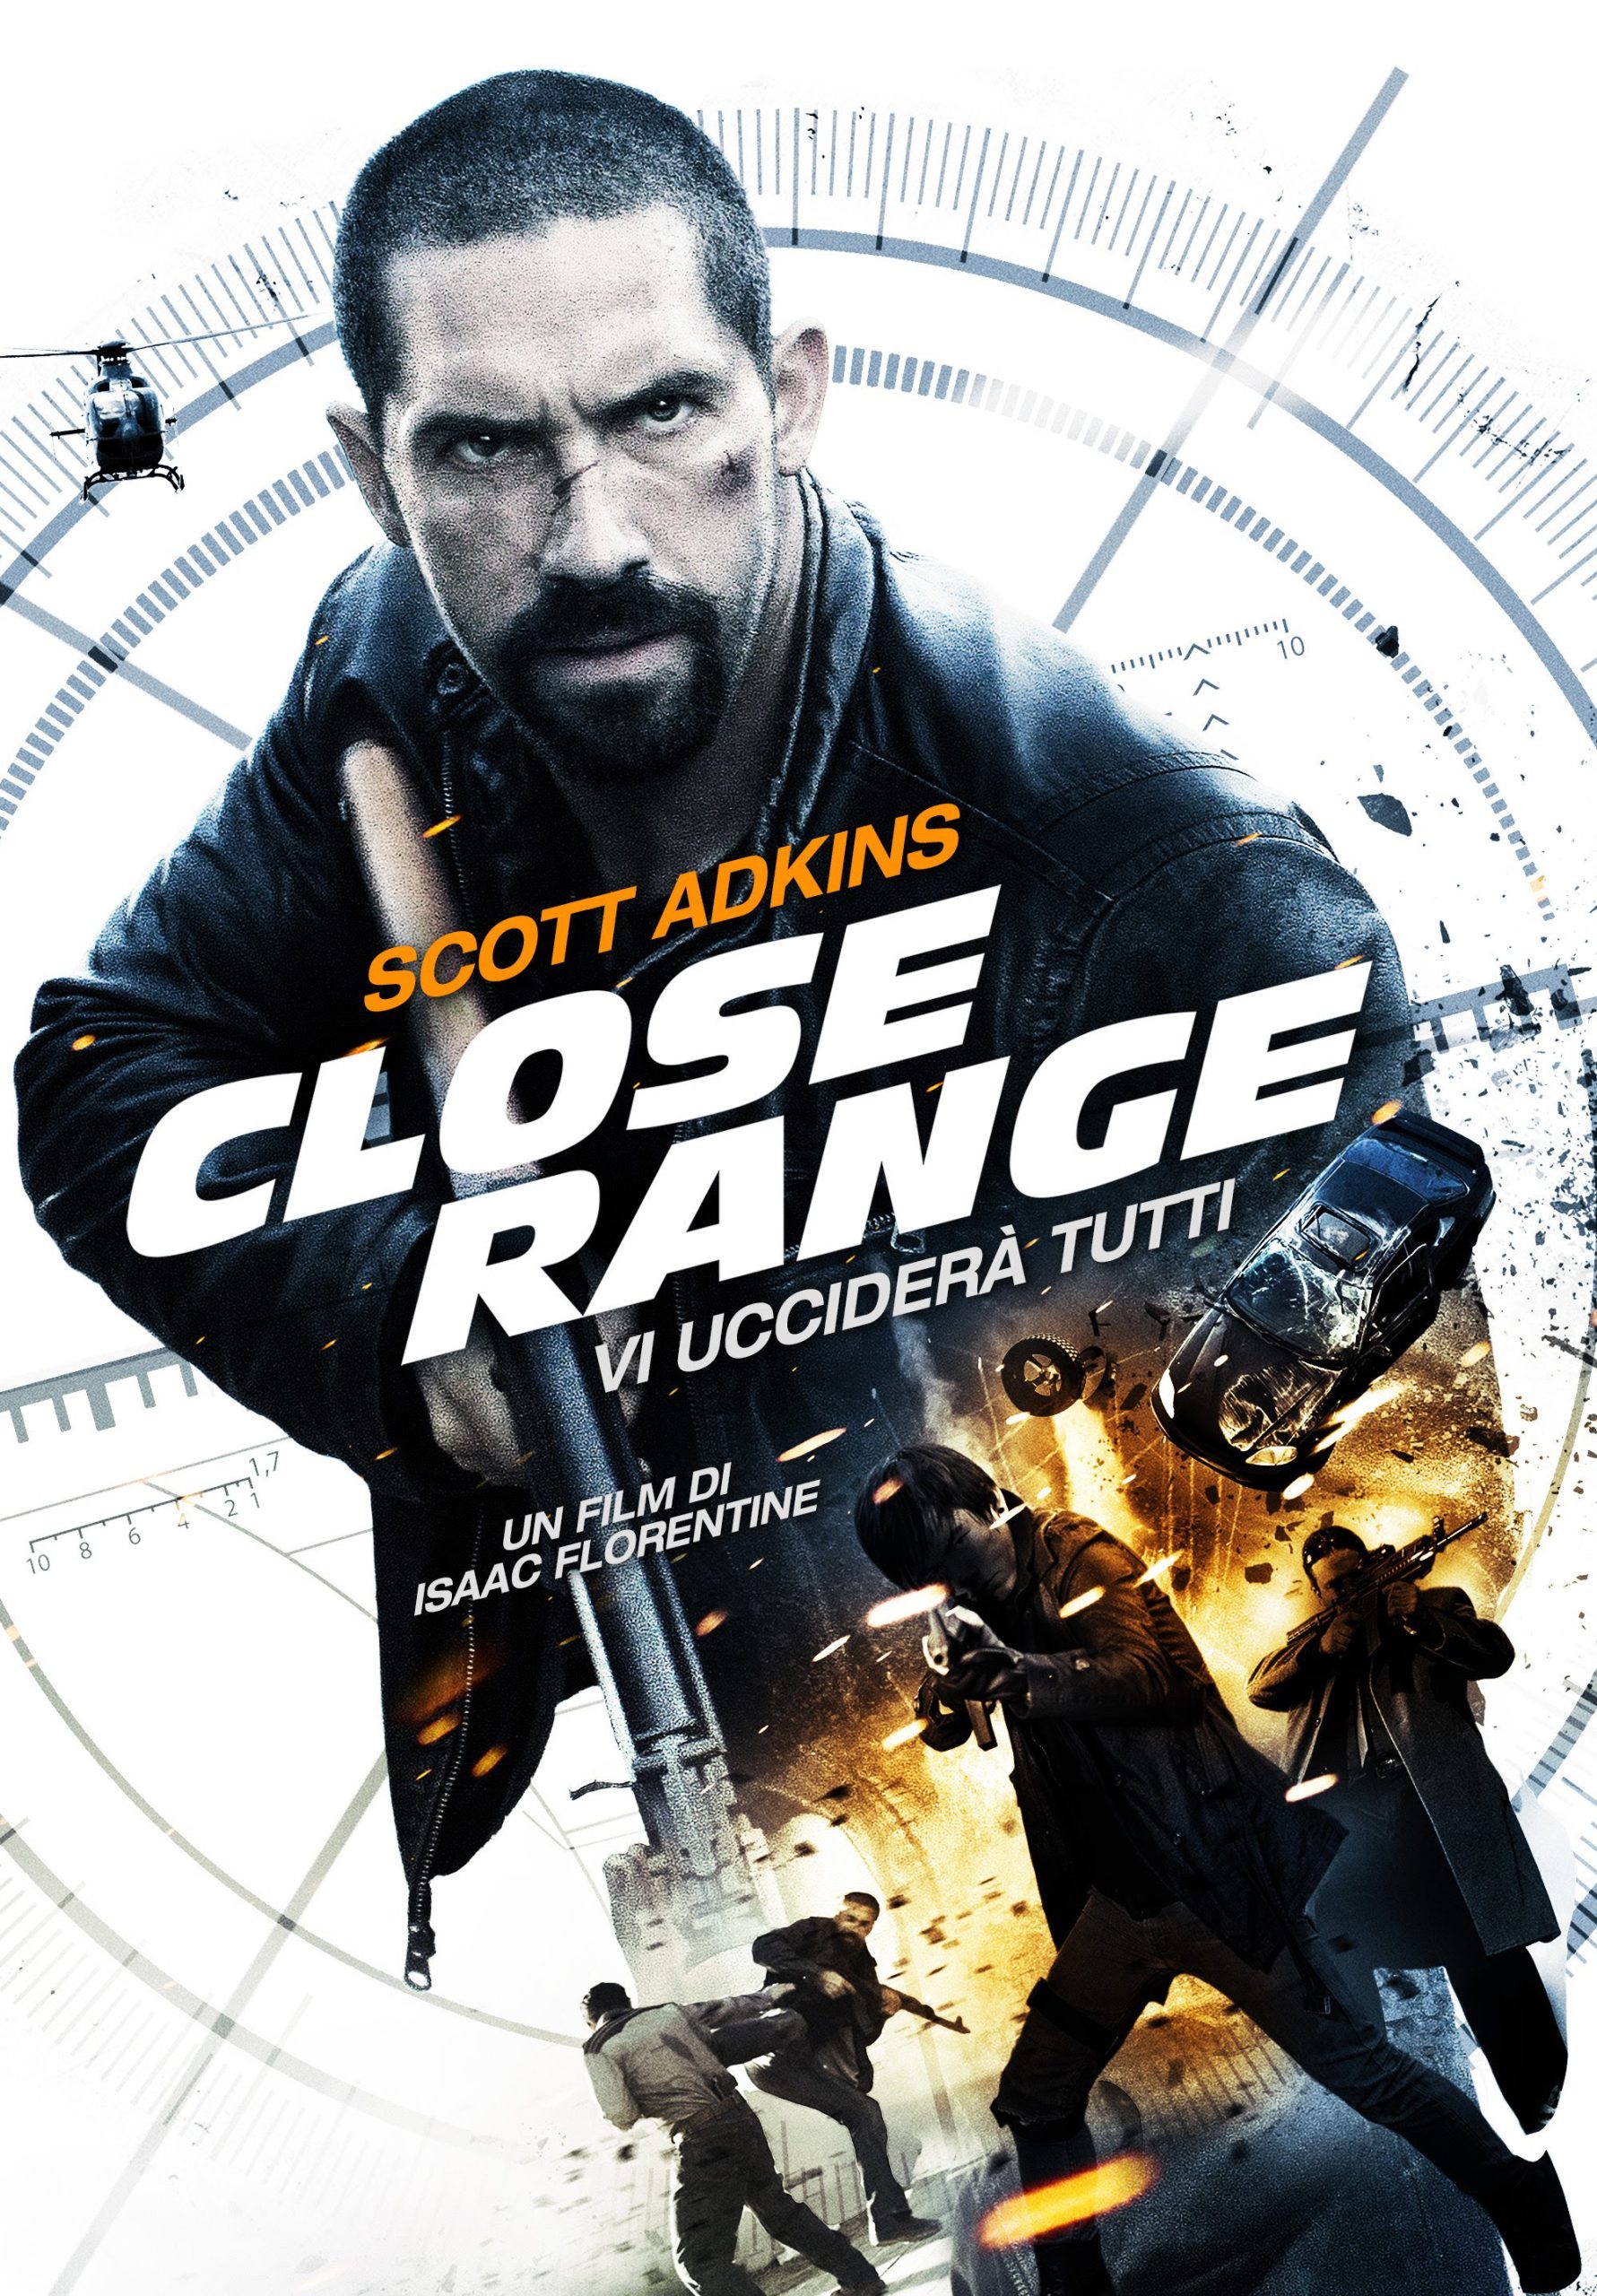 Close Range – Vi ucciderà tutti [HD] (2015)